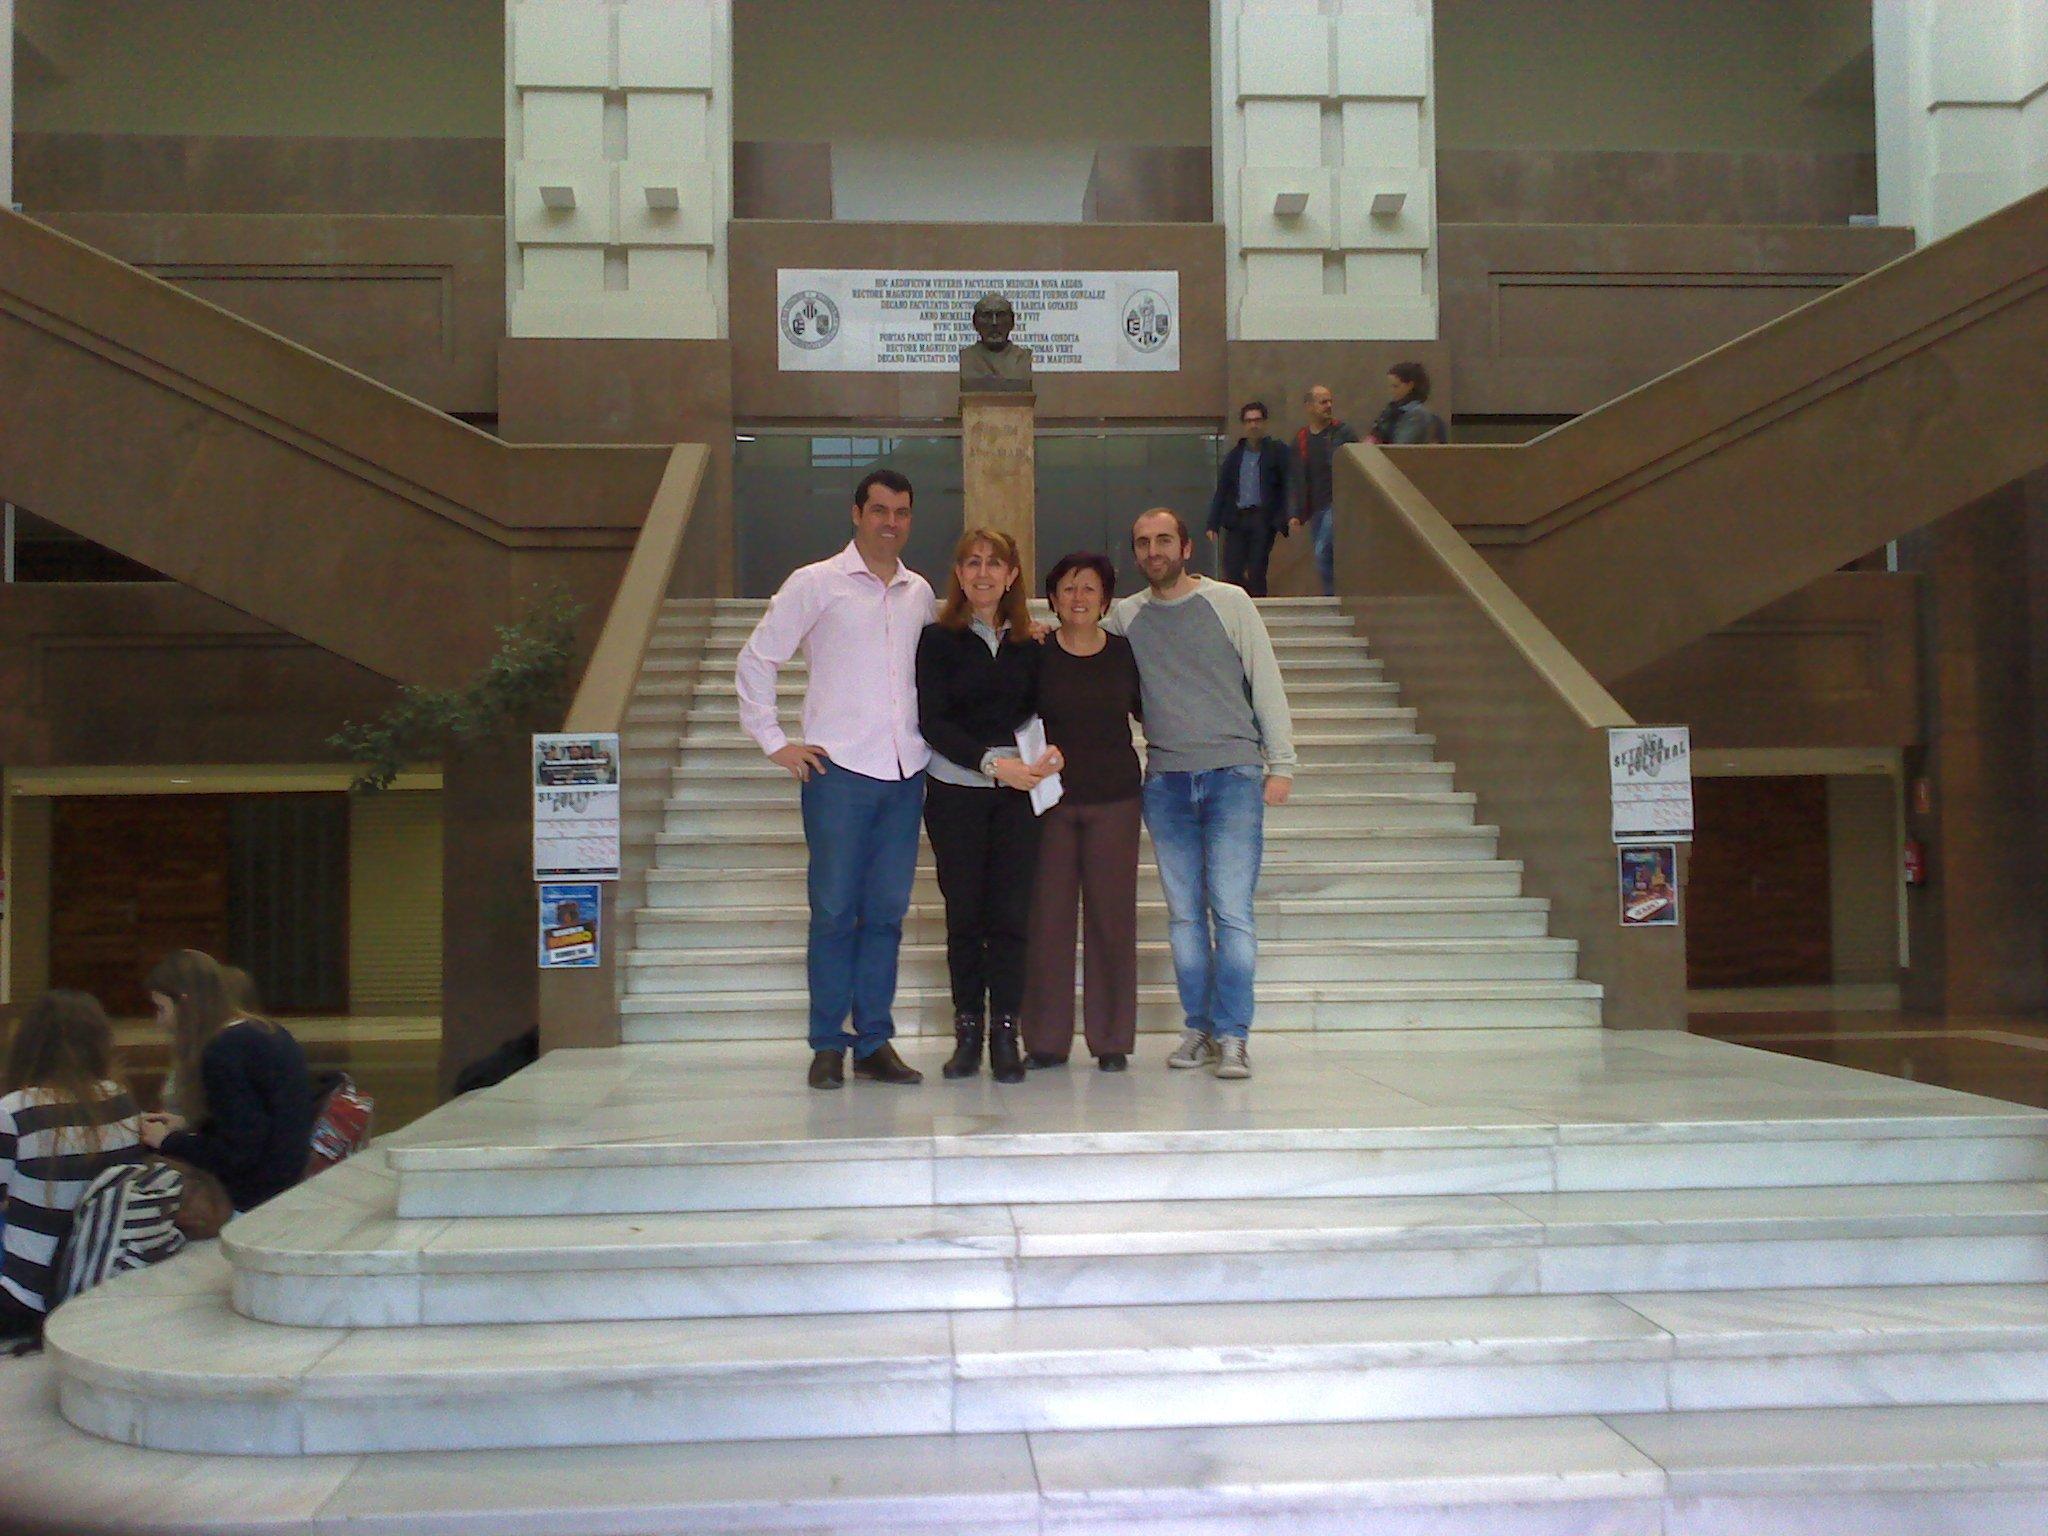 quatro pessoas posam para foto em frente a escadaria.